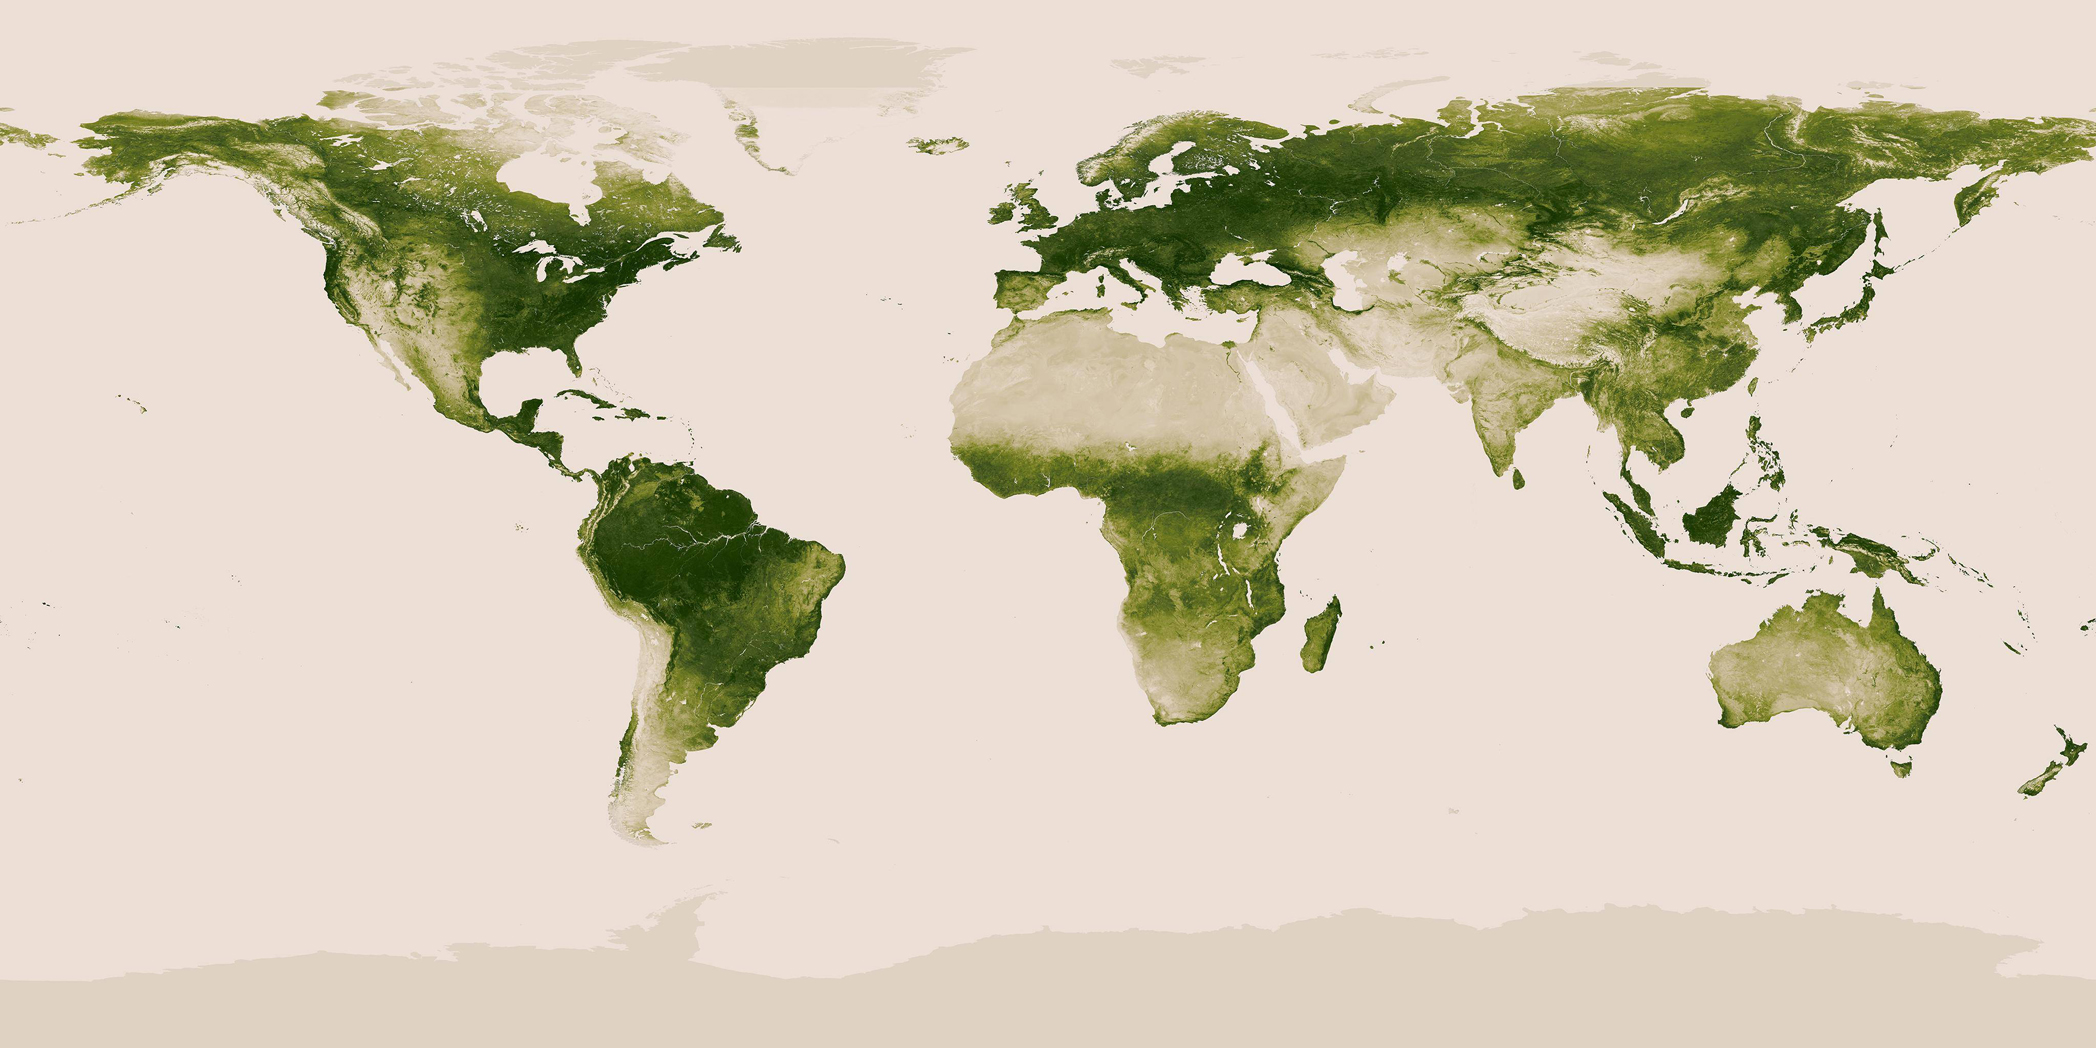 Where earth's vegetation resides